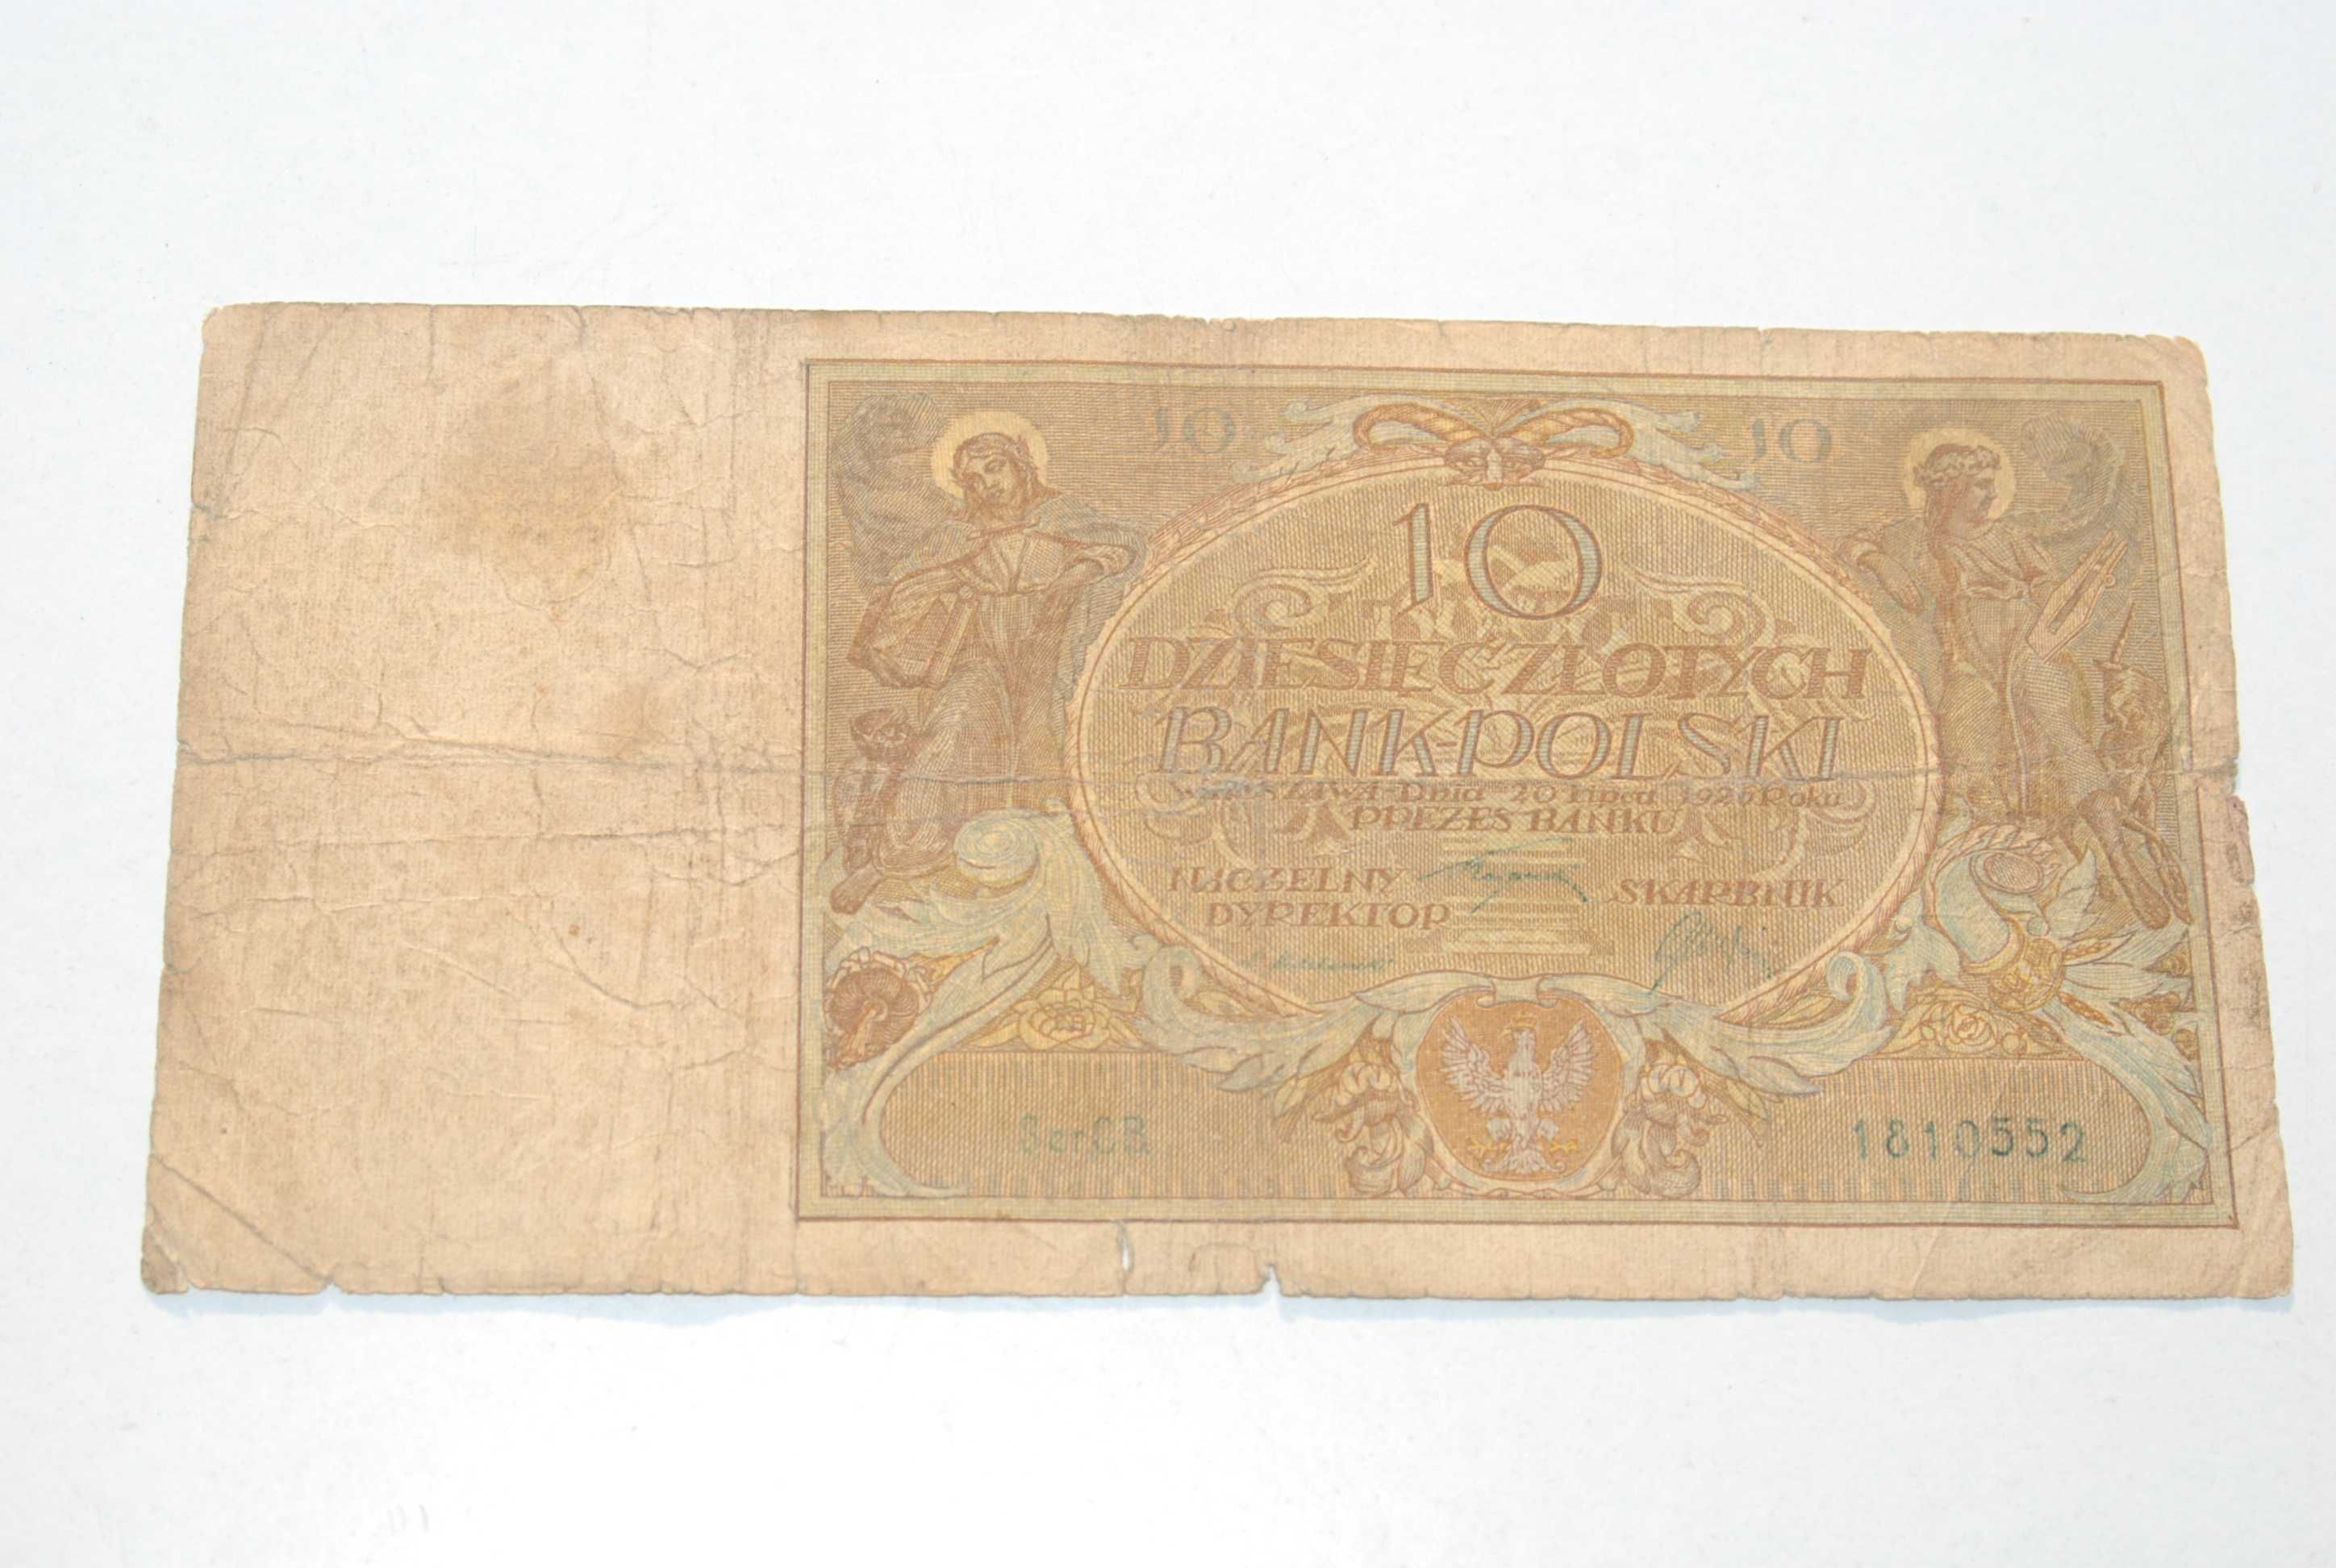 Stary banknot 10 złotych 1926 antyk unikat rzadki